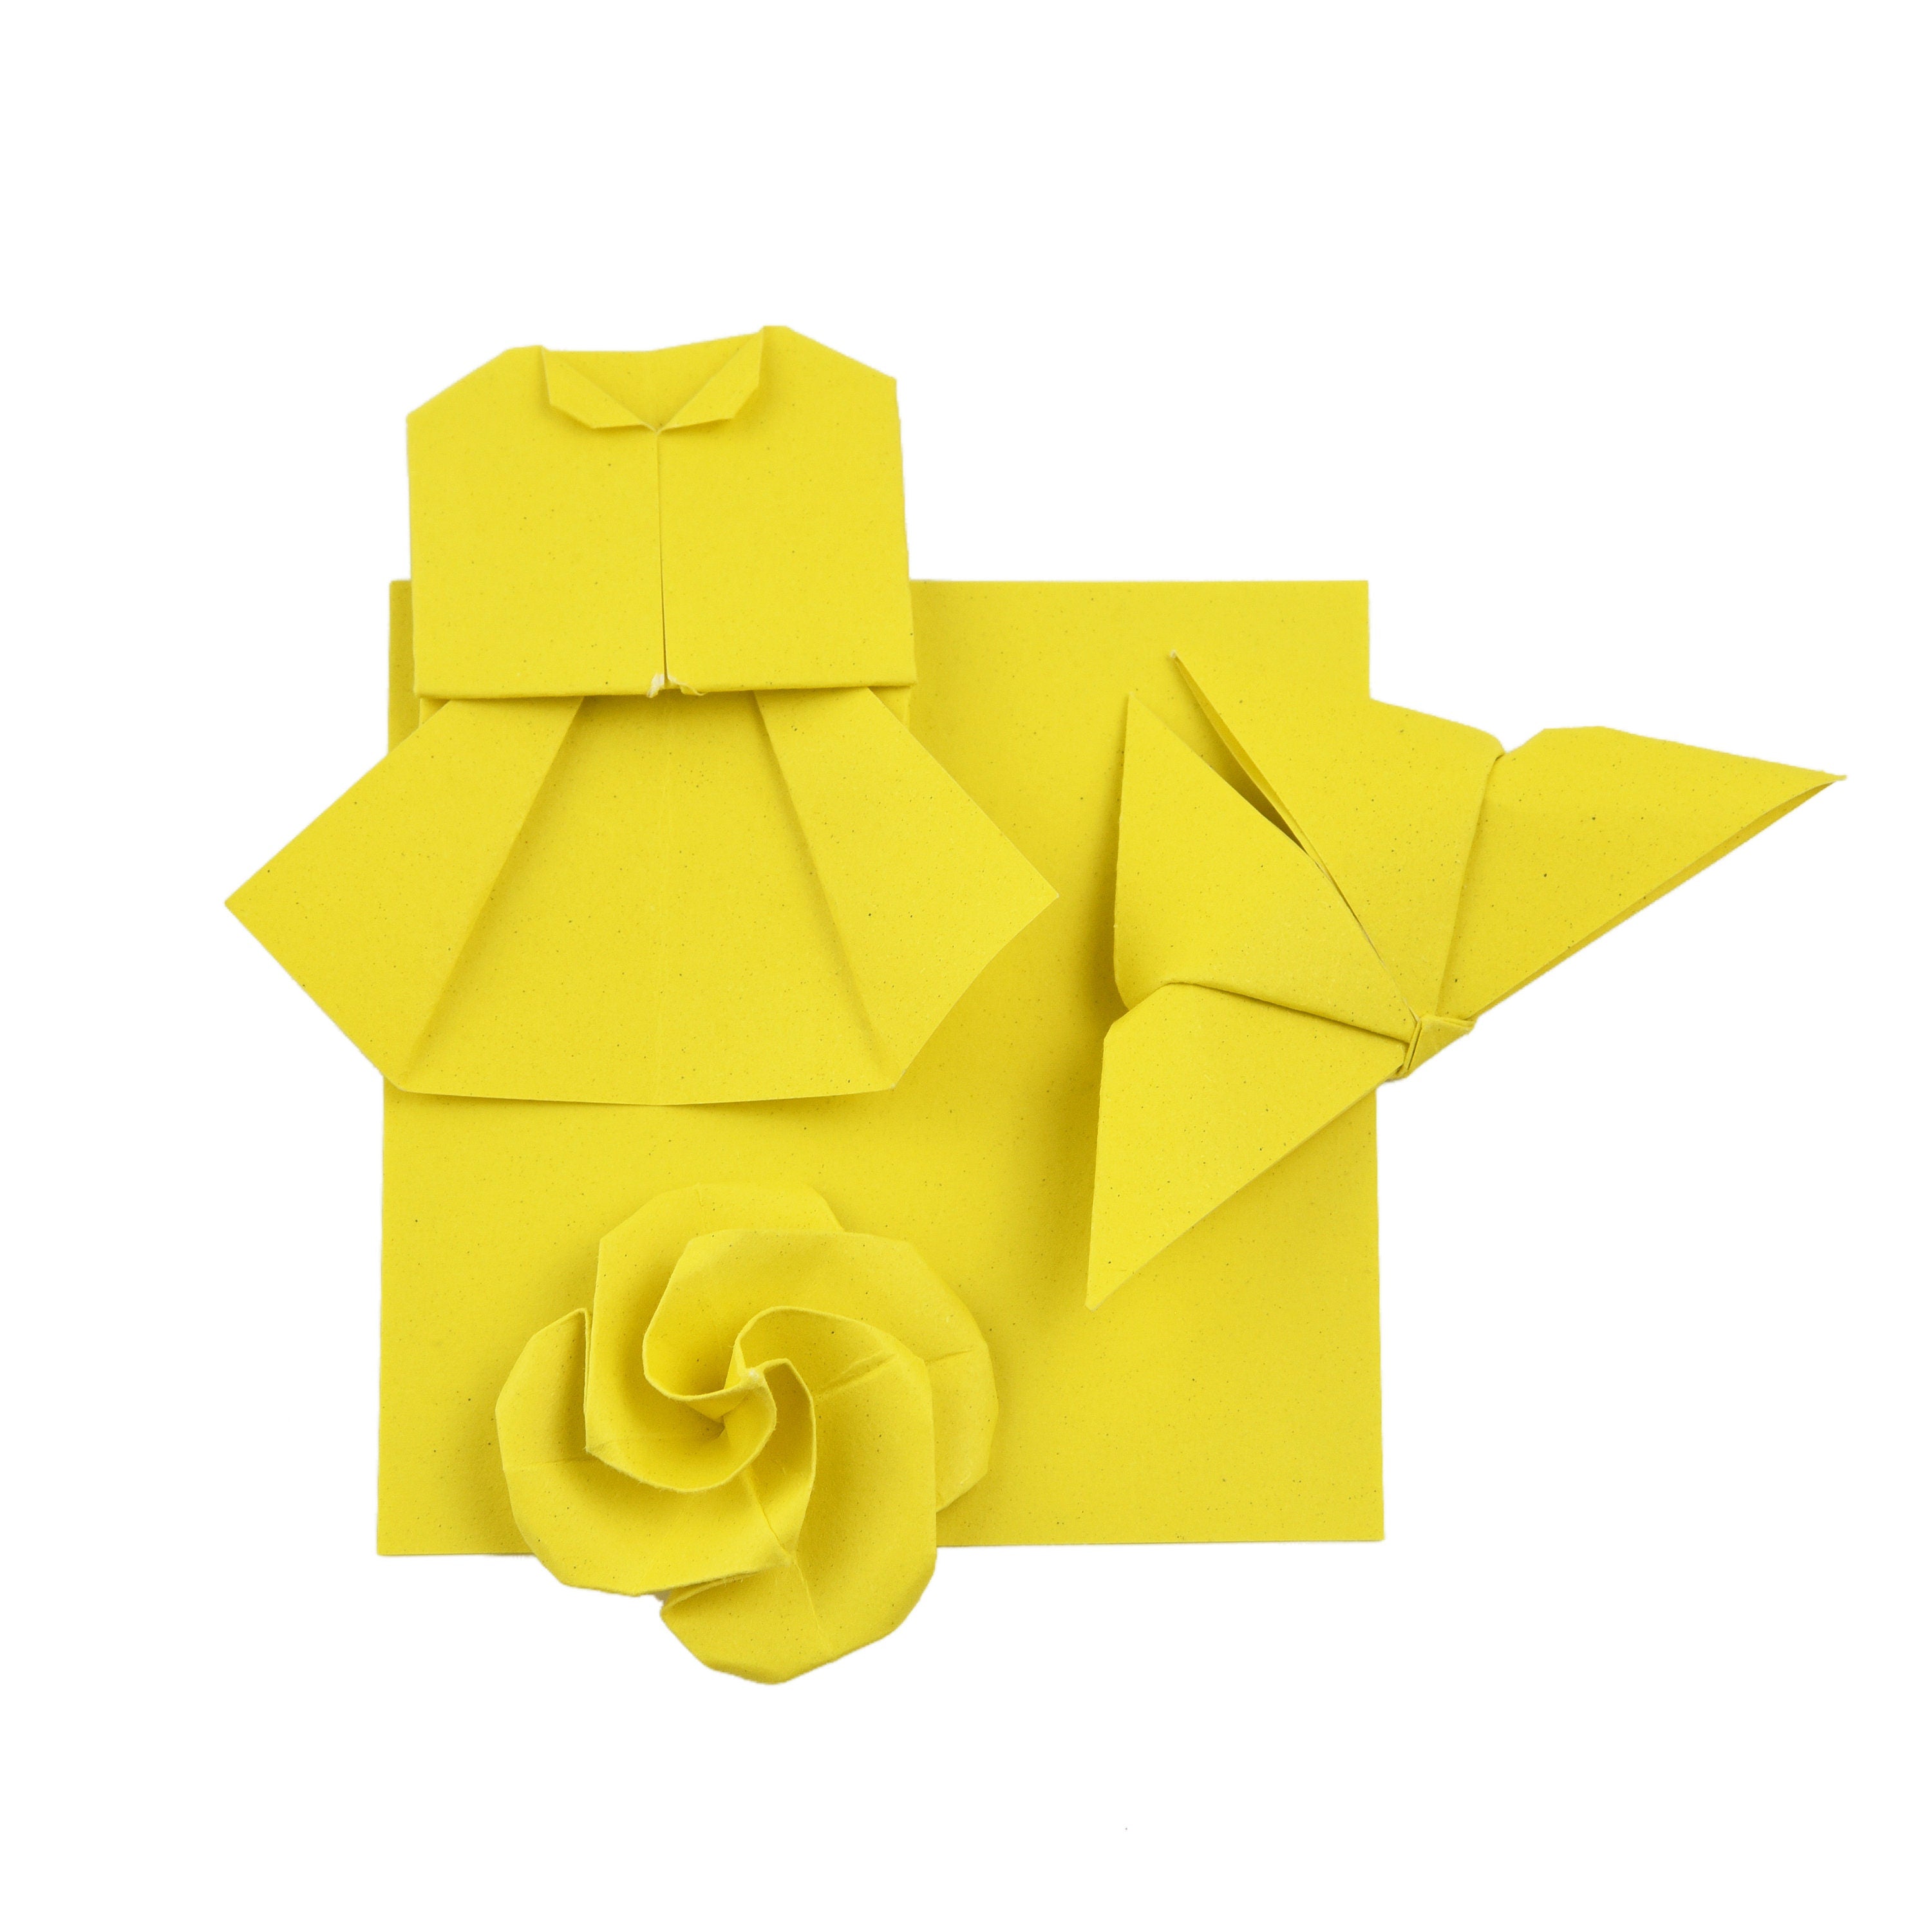 100 fogli di carta origami - 6x6 pollici - Confezione di carta quadrata per piegare, gru origami e decorazioni - S01